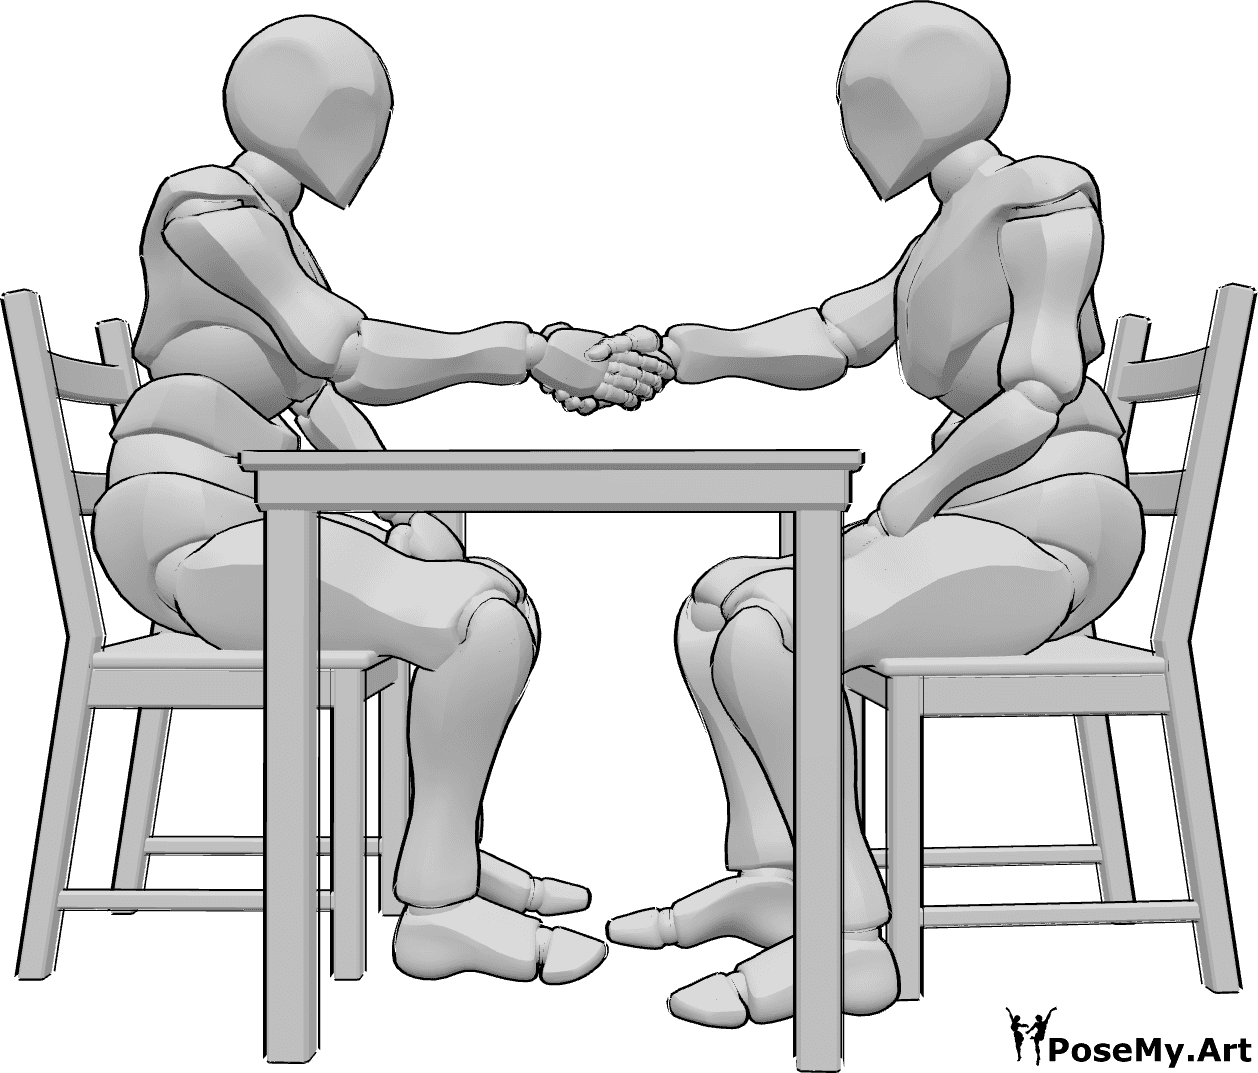 Référence des poses- Homme assis en train de serrer la main - Deux hommes sont assis à une table en face l'un de l'autre et se serrent la main.